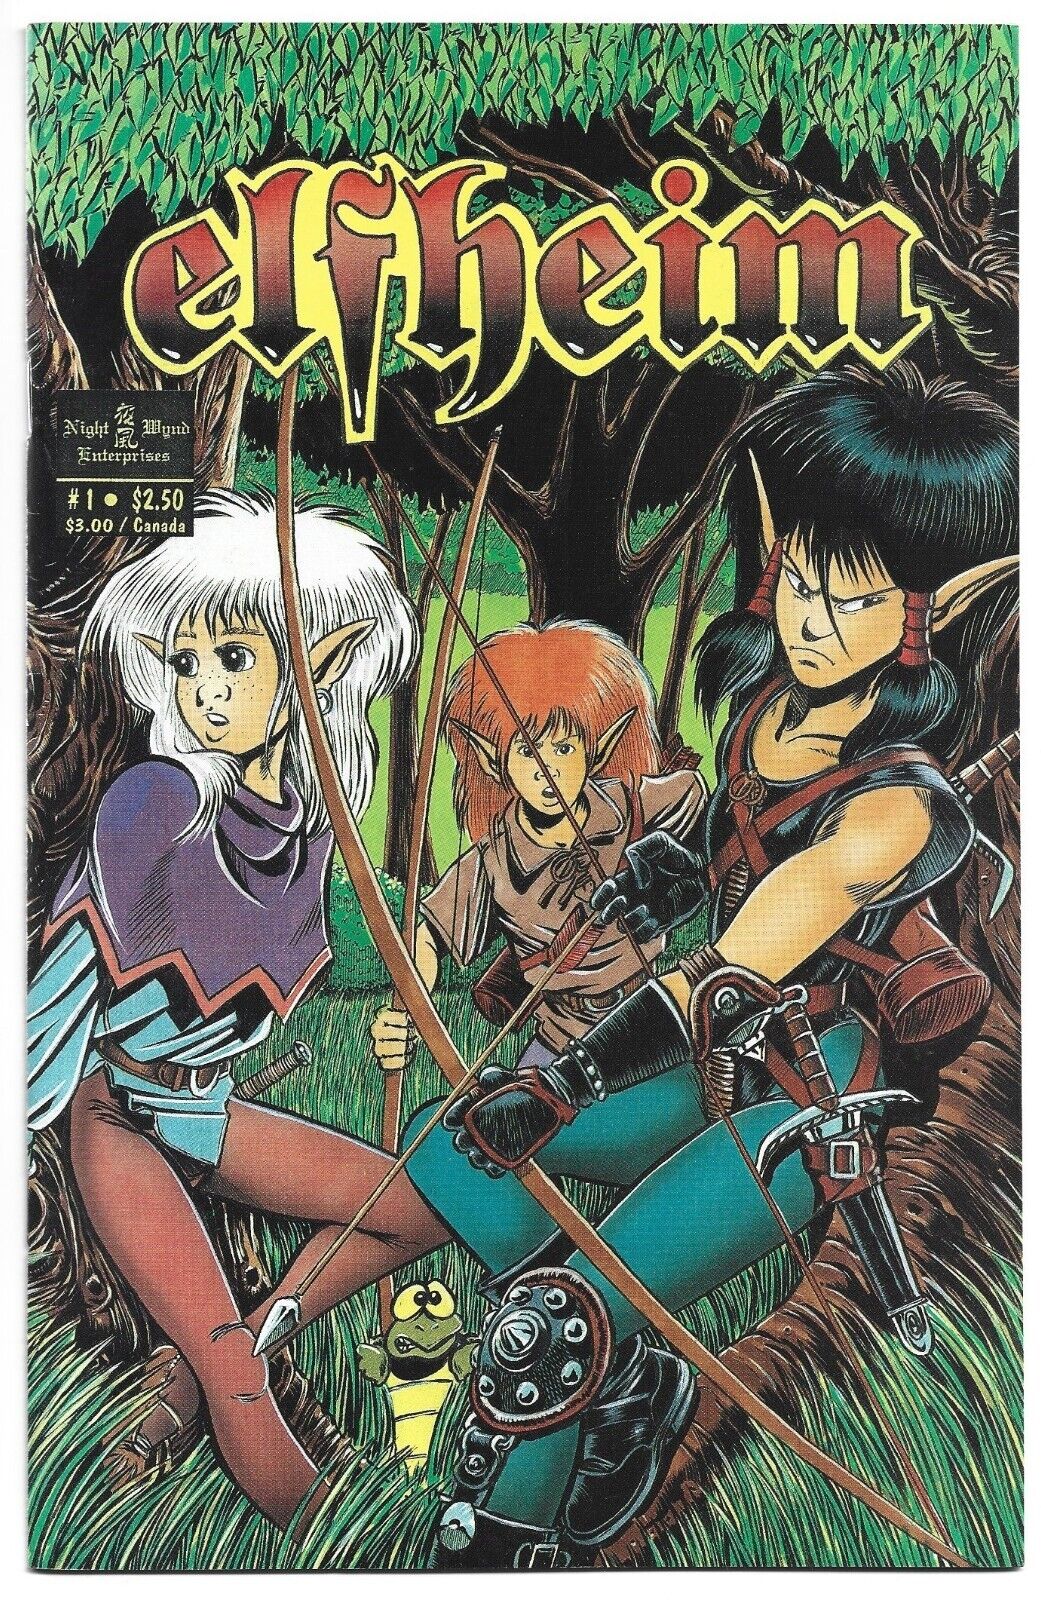 *Elfheim #1  (1991, NIght Wynd Enterprises)